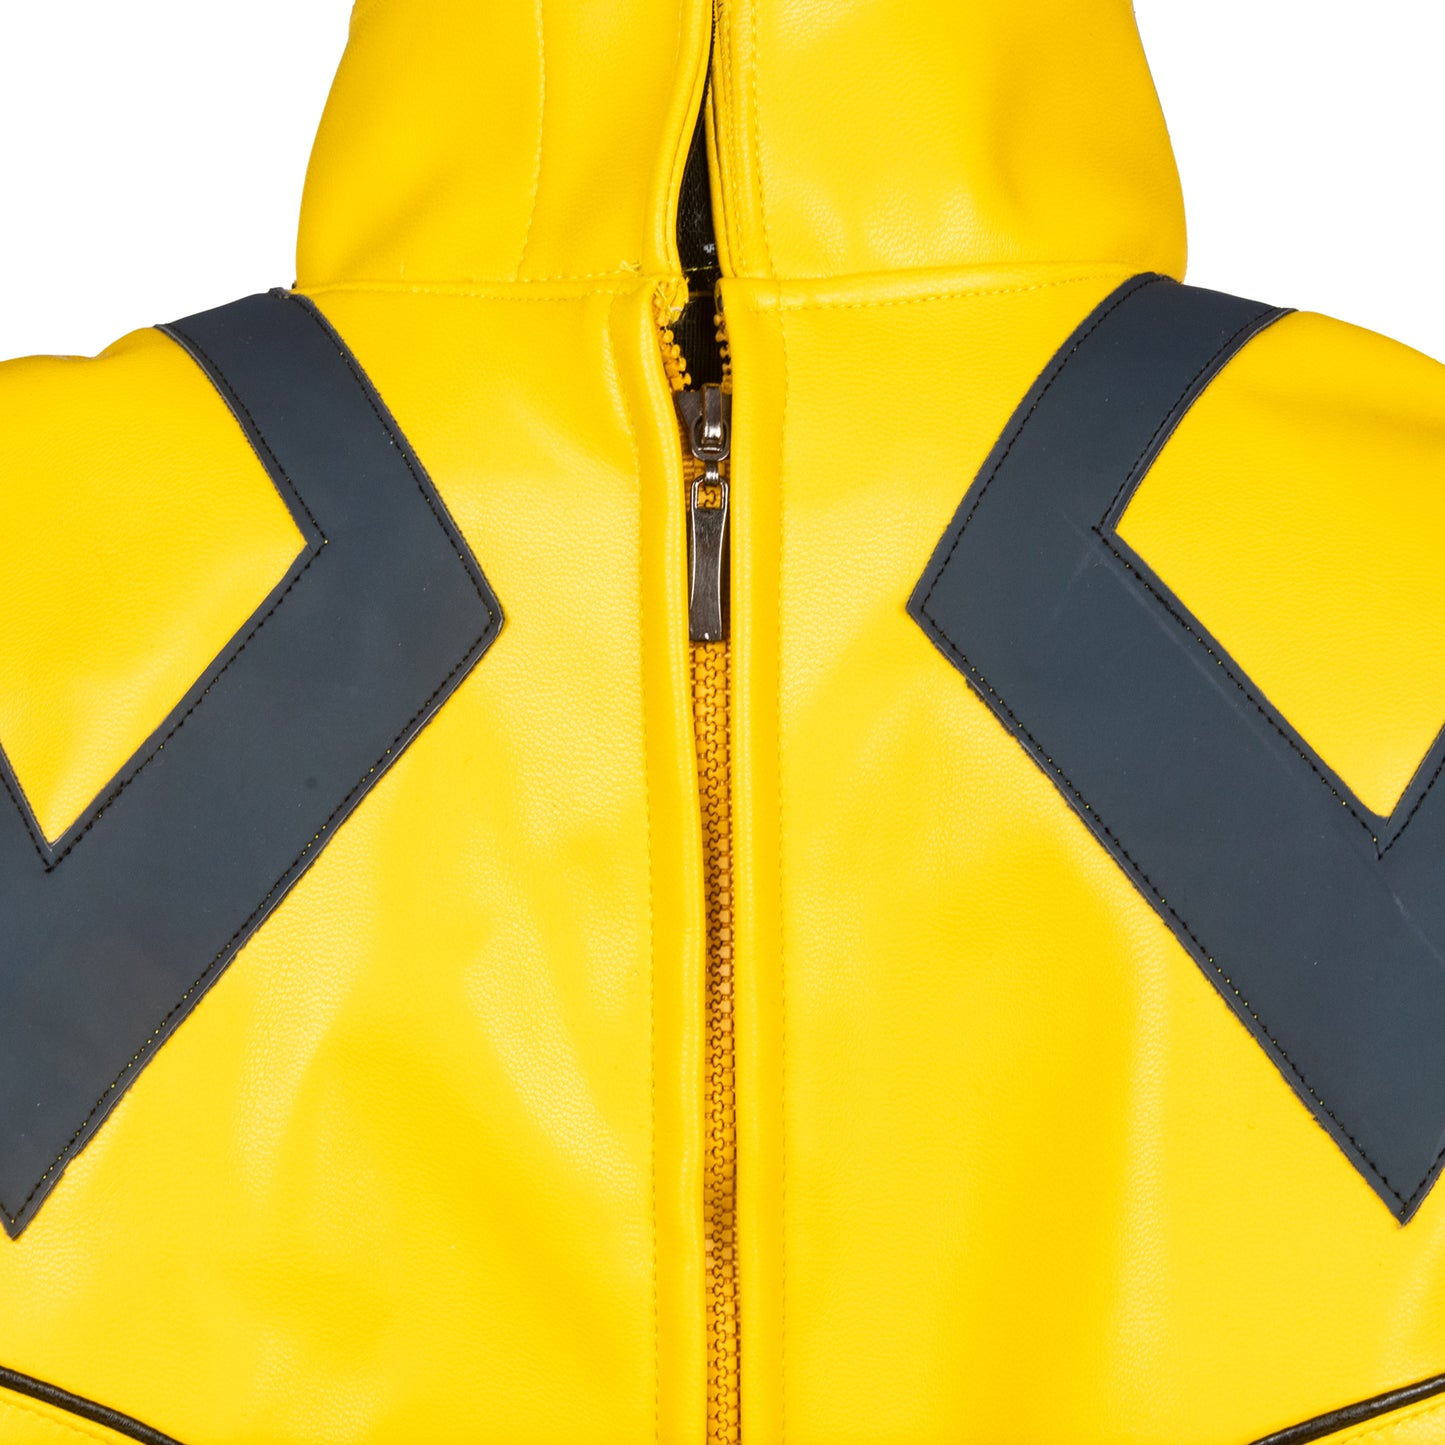 【Neu eingetroffen】Xcoser Deadpool 3 Hugh Jackman Wolverine Ganzanzug Cosplay-Kostüm